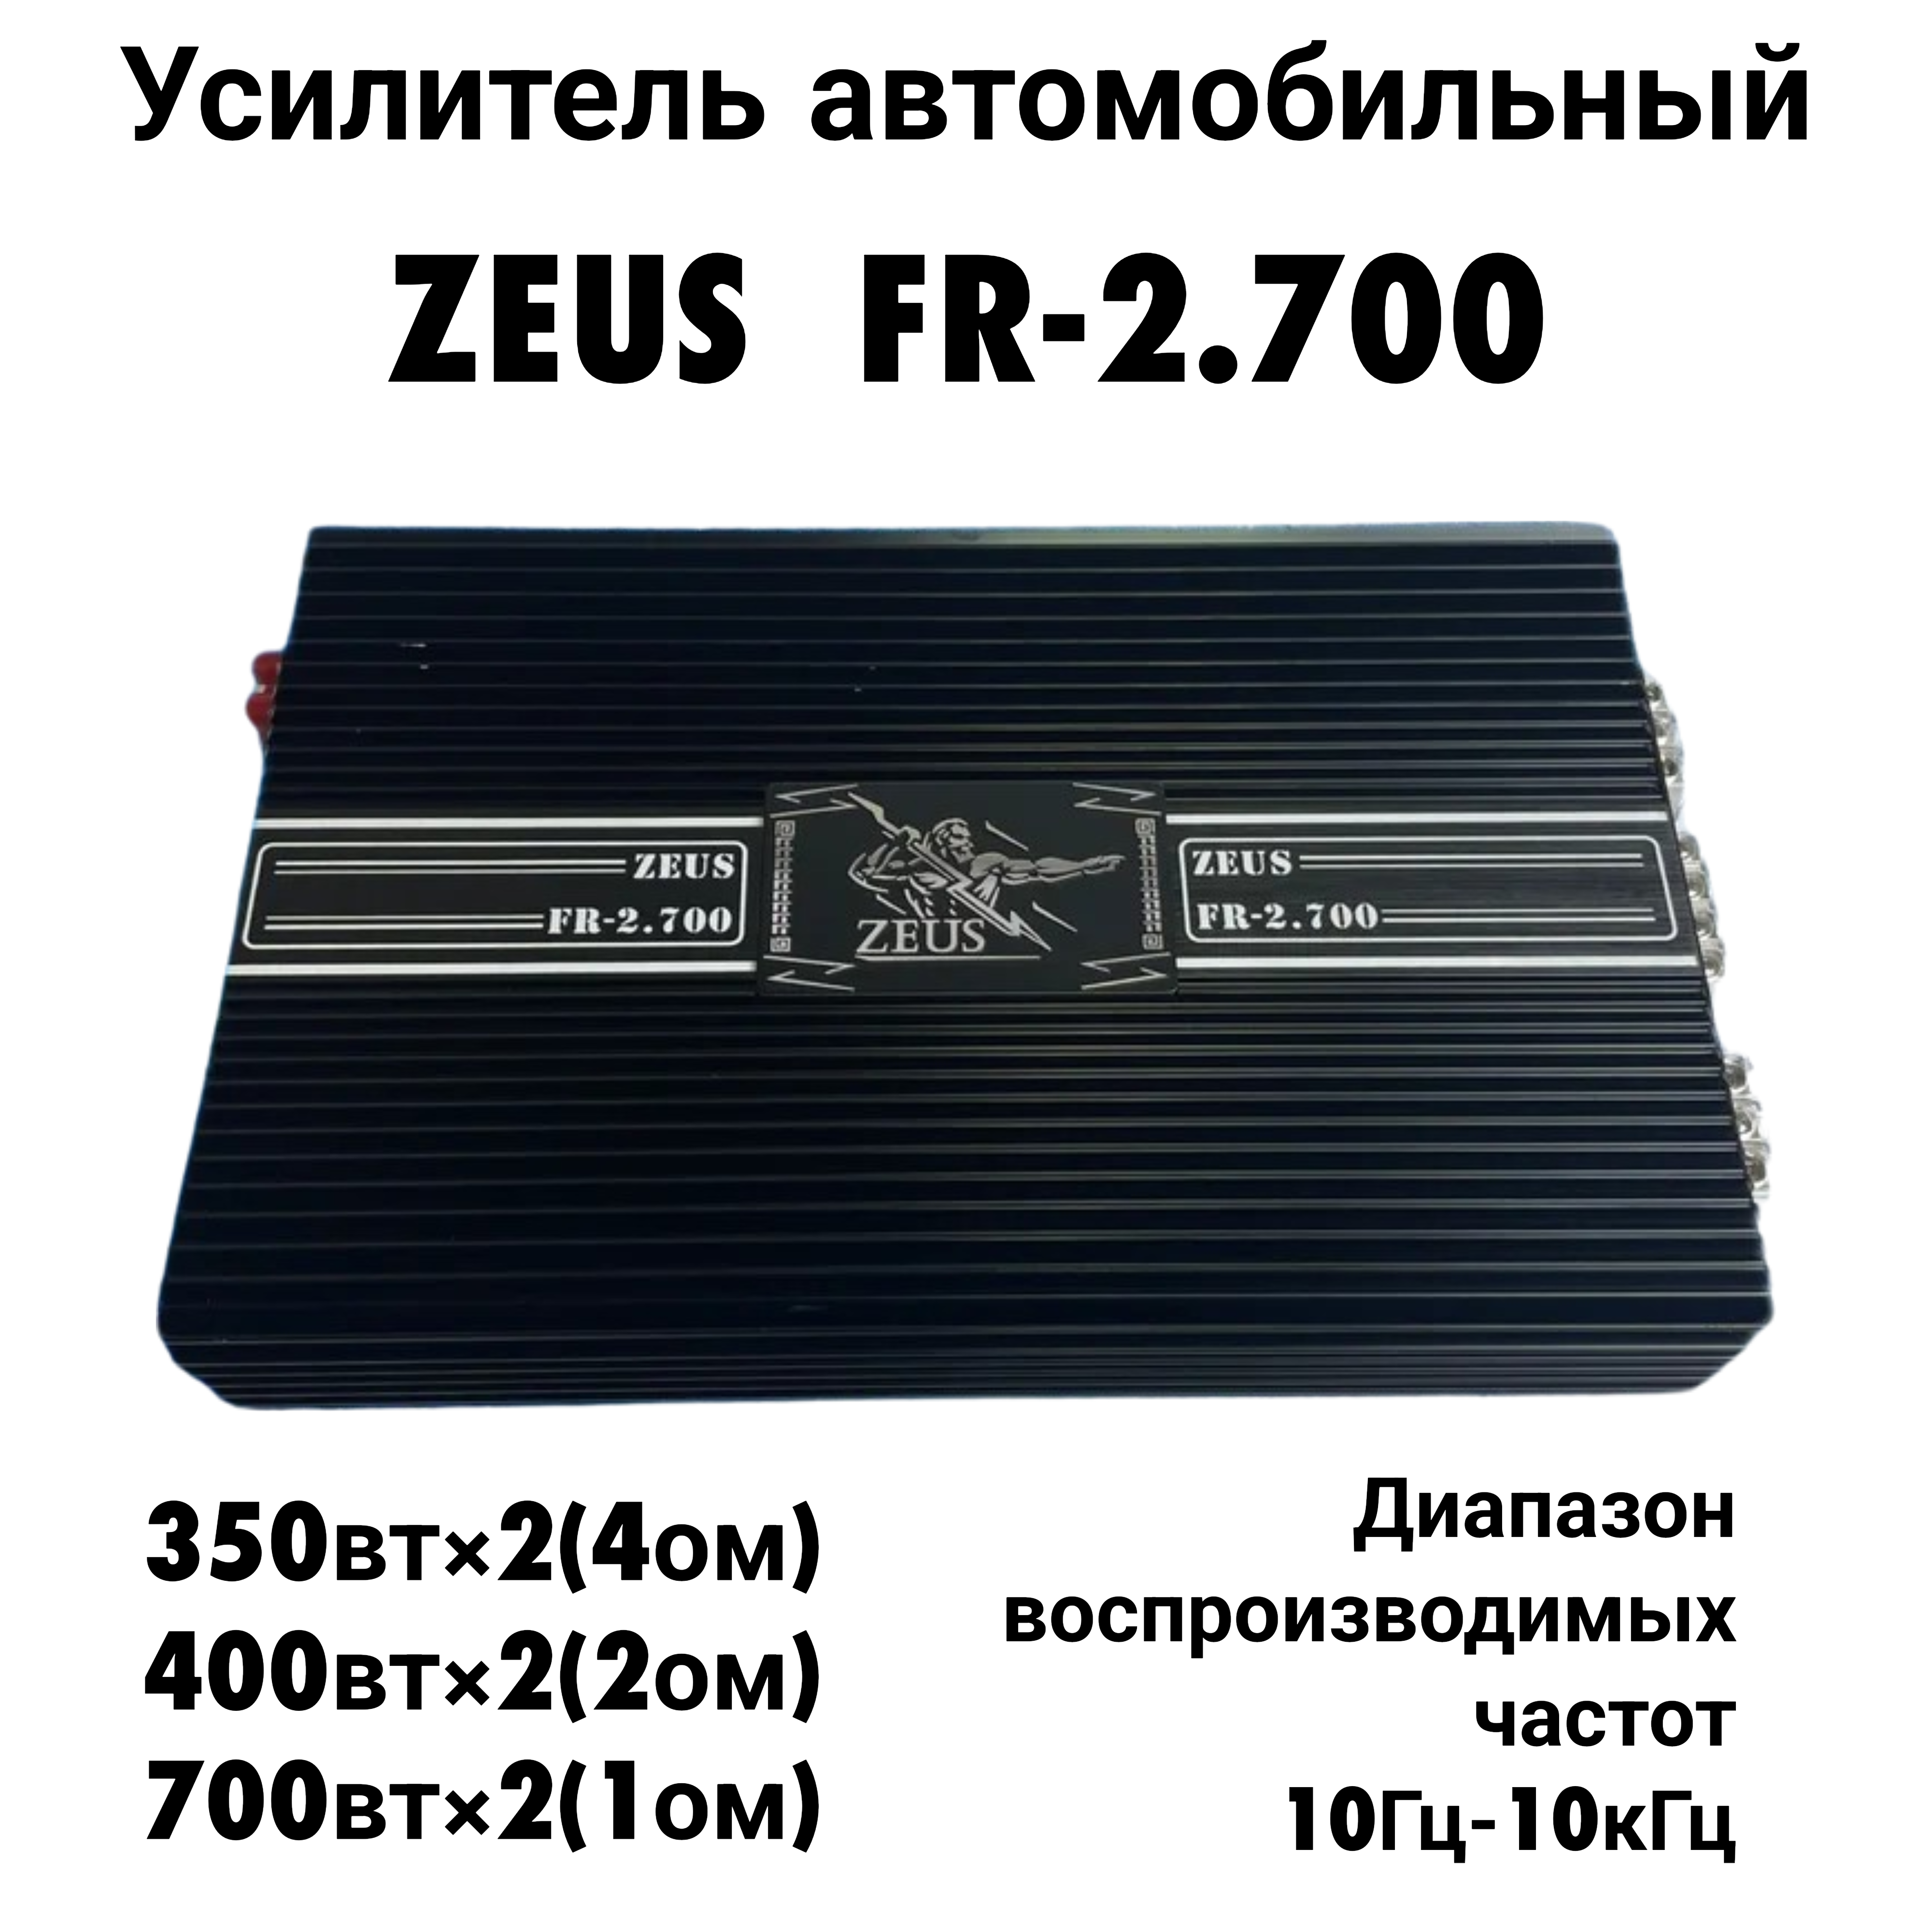 Автомобильный усилитель ZEUS FR-2.700